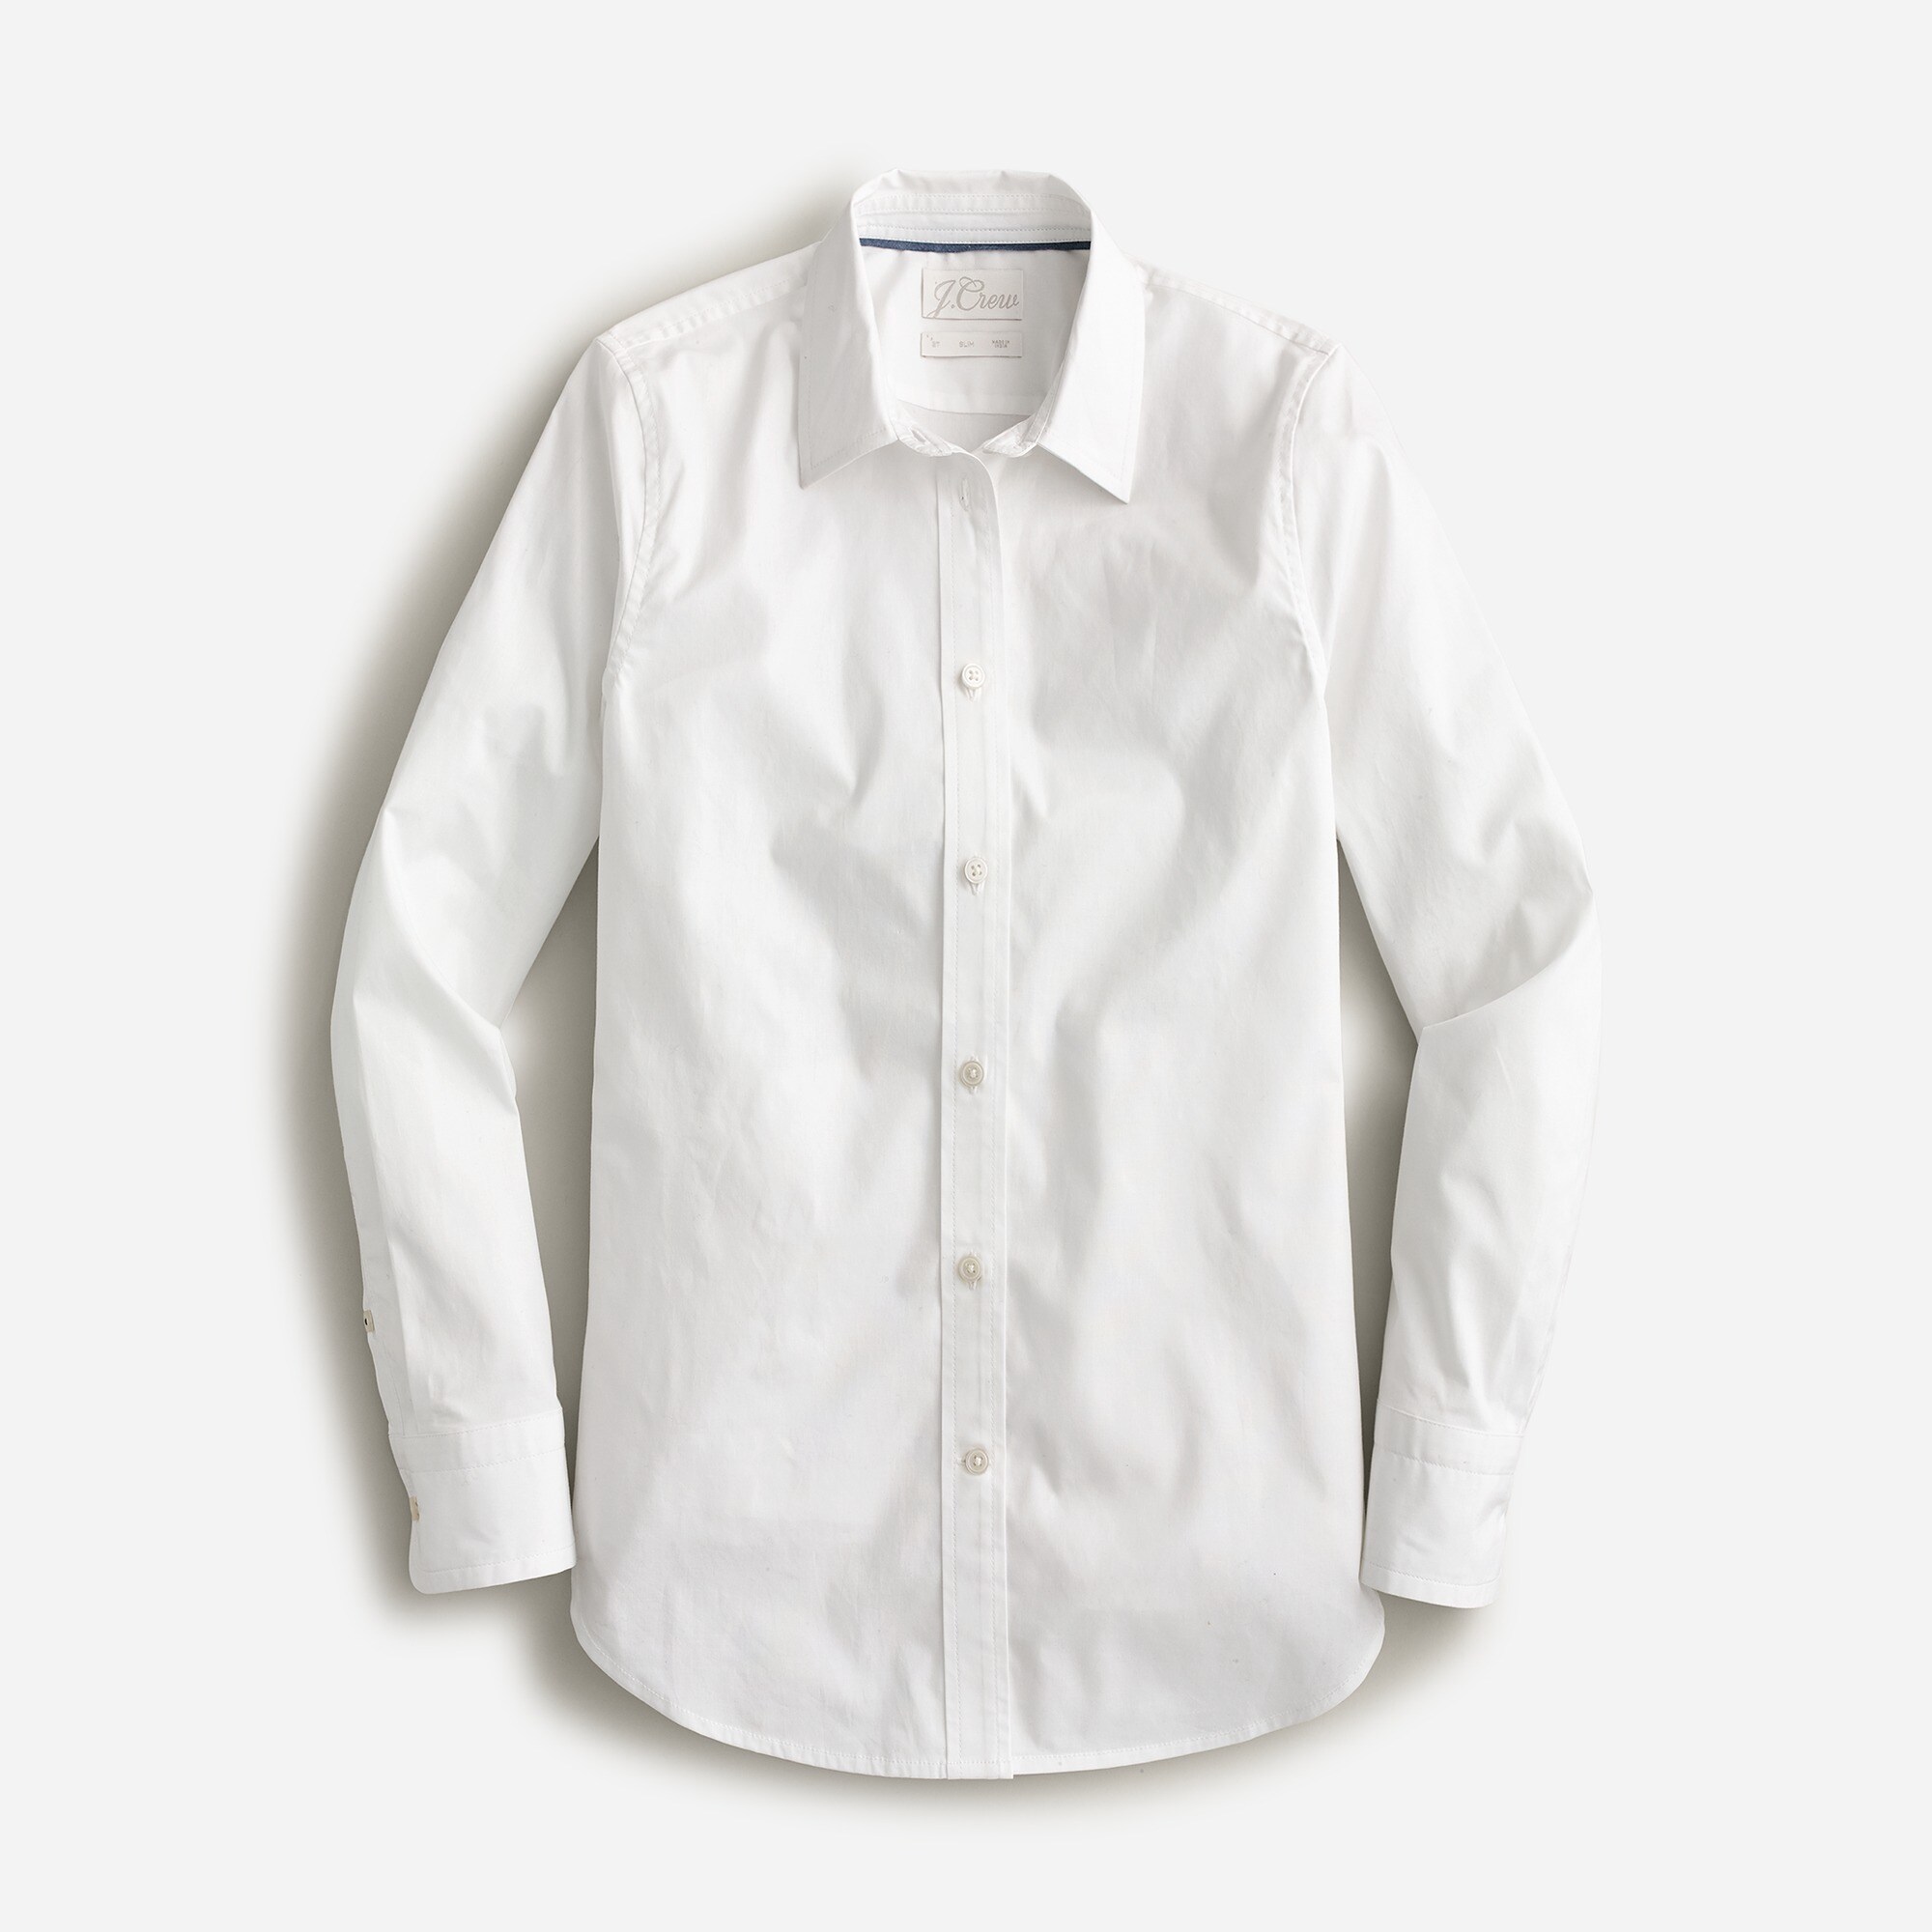  Tall slim-fit stretch cotton poplin shirt